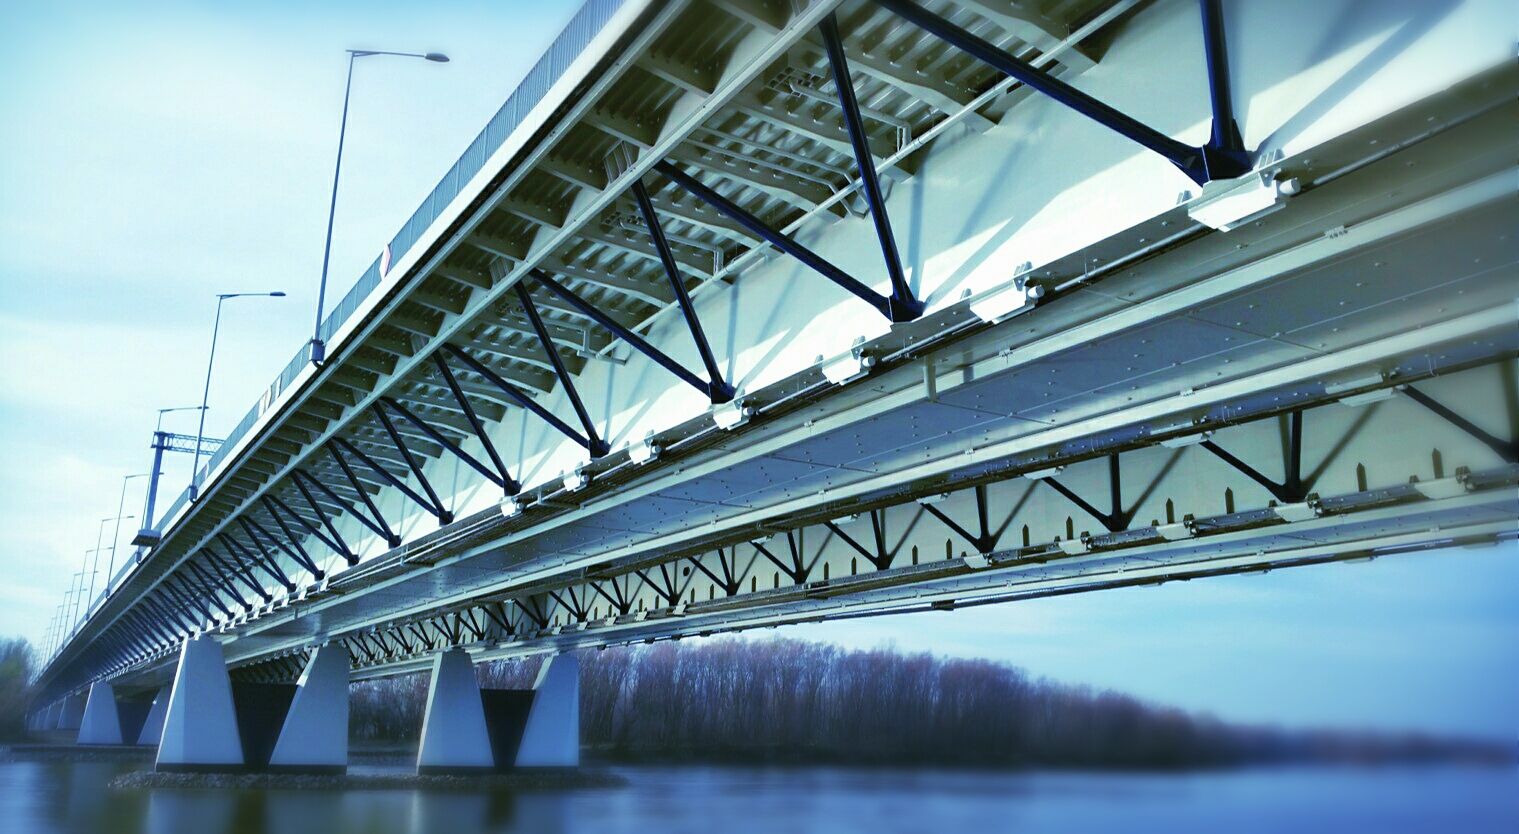 Grota-Roweckiego bridge in Warsaw